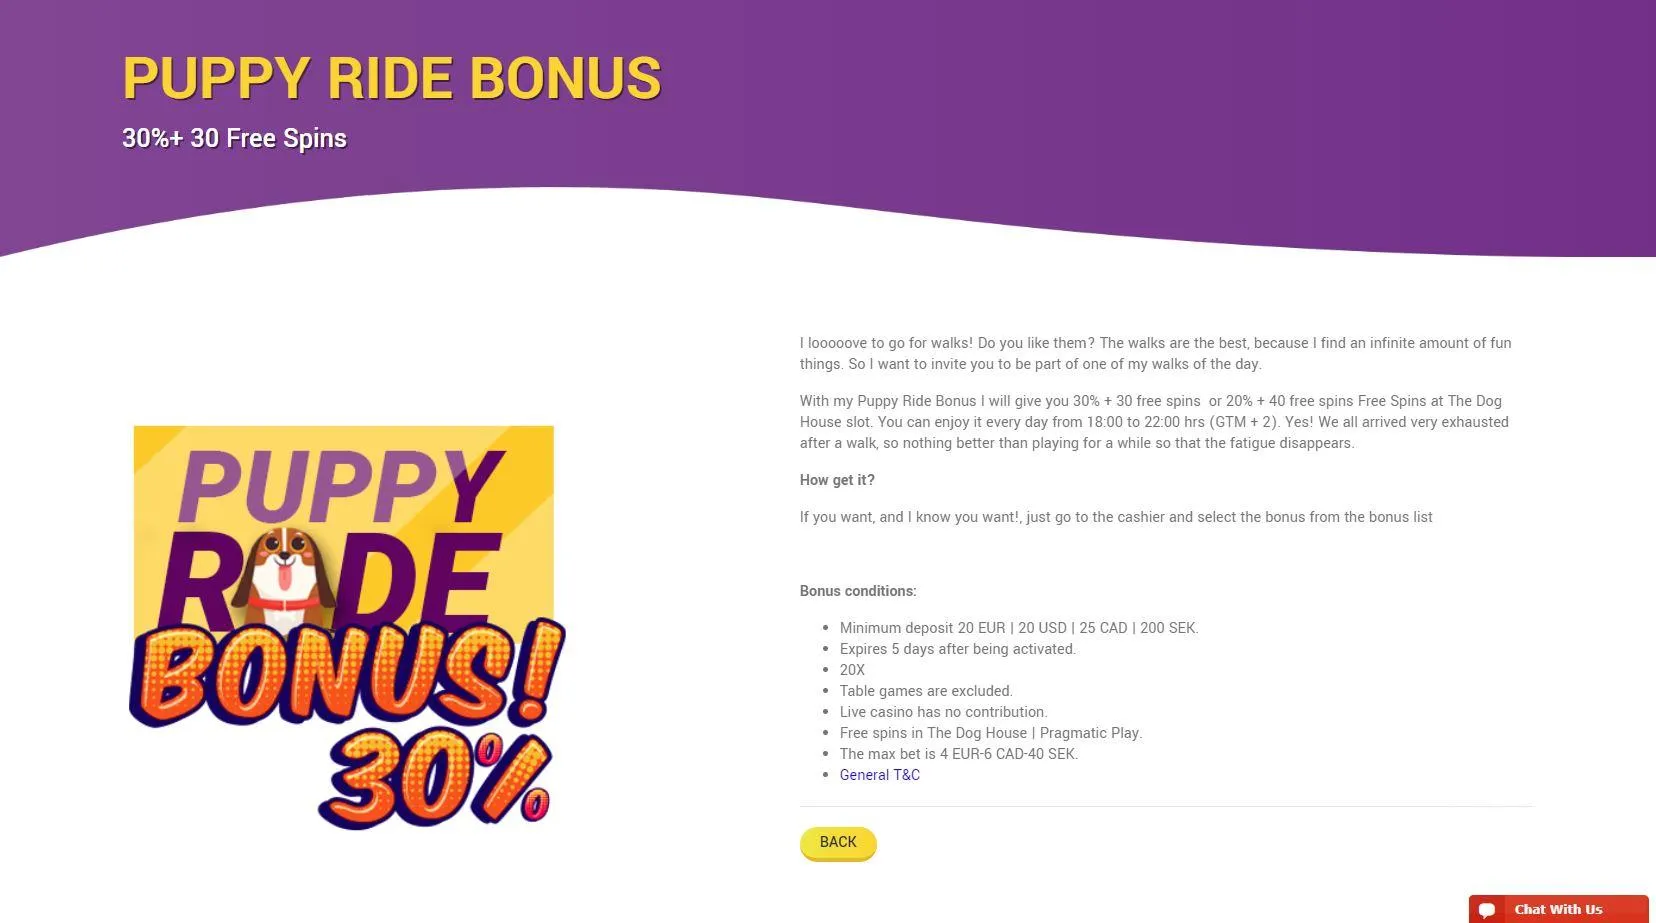 will's casino irish online casino the dog house online slot bonus free spins